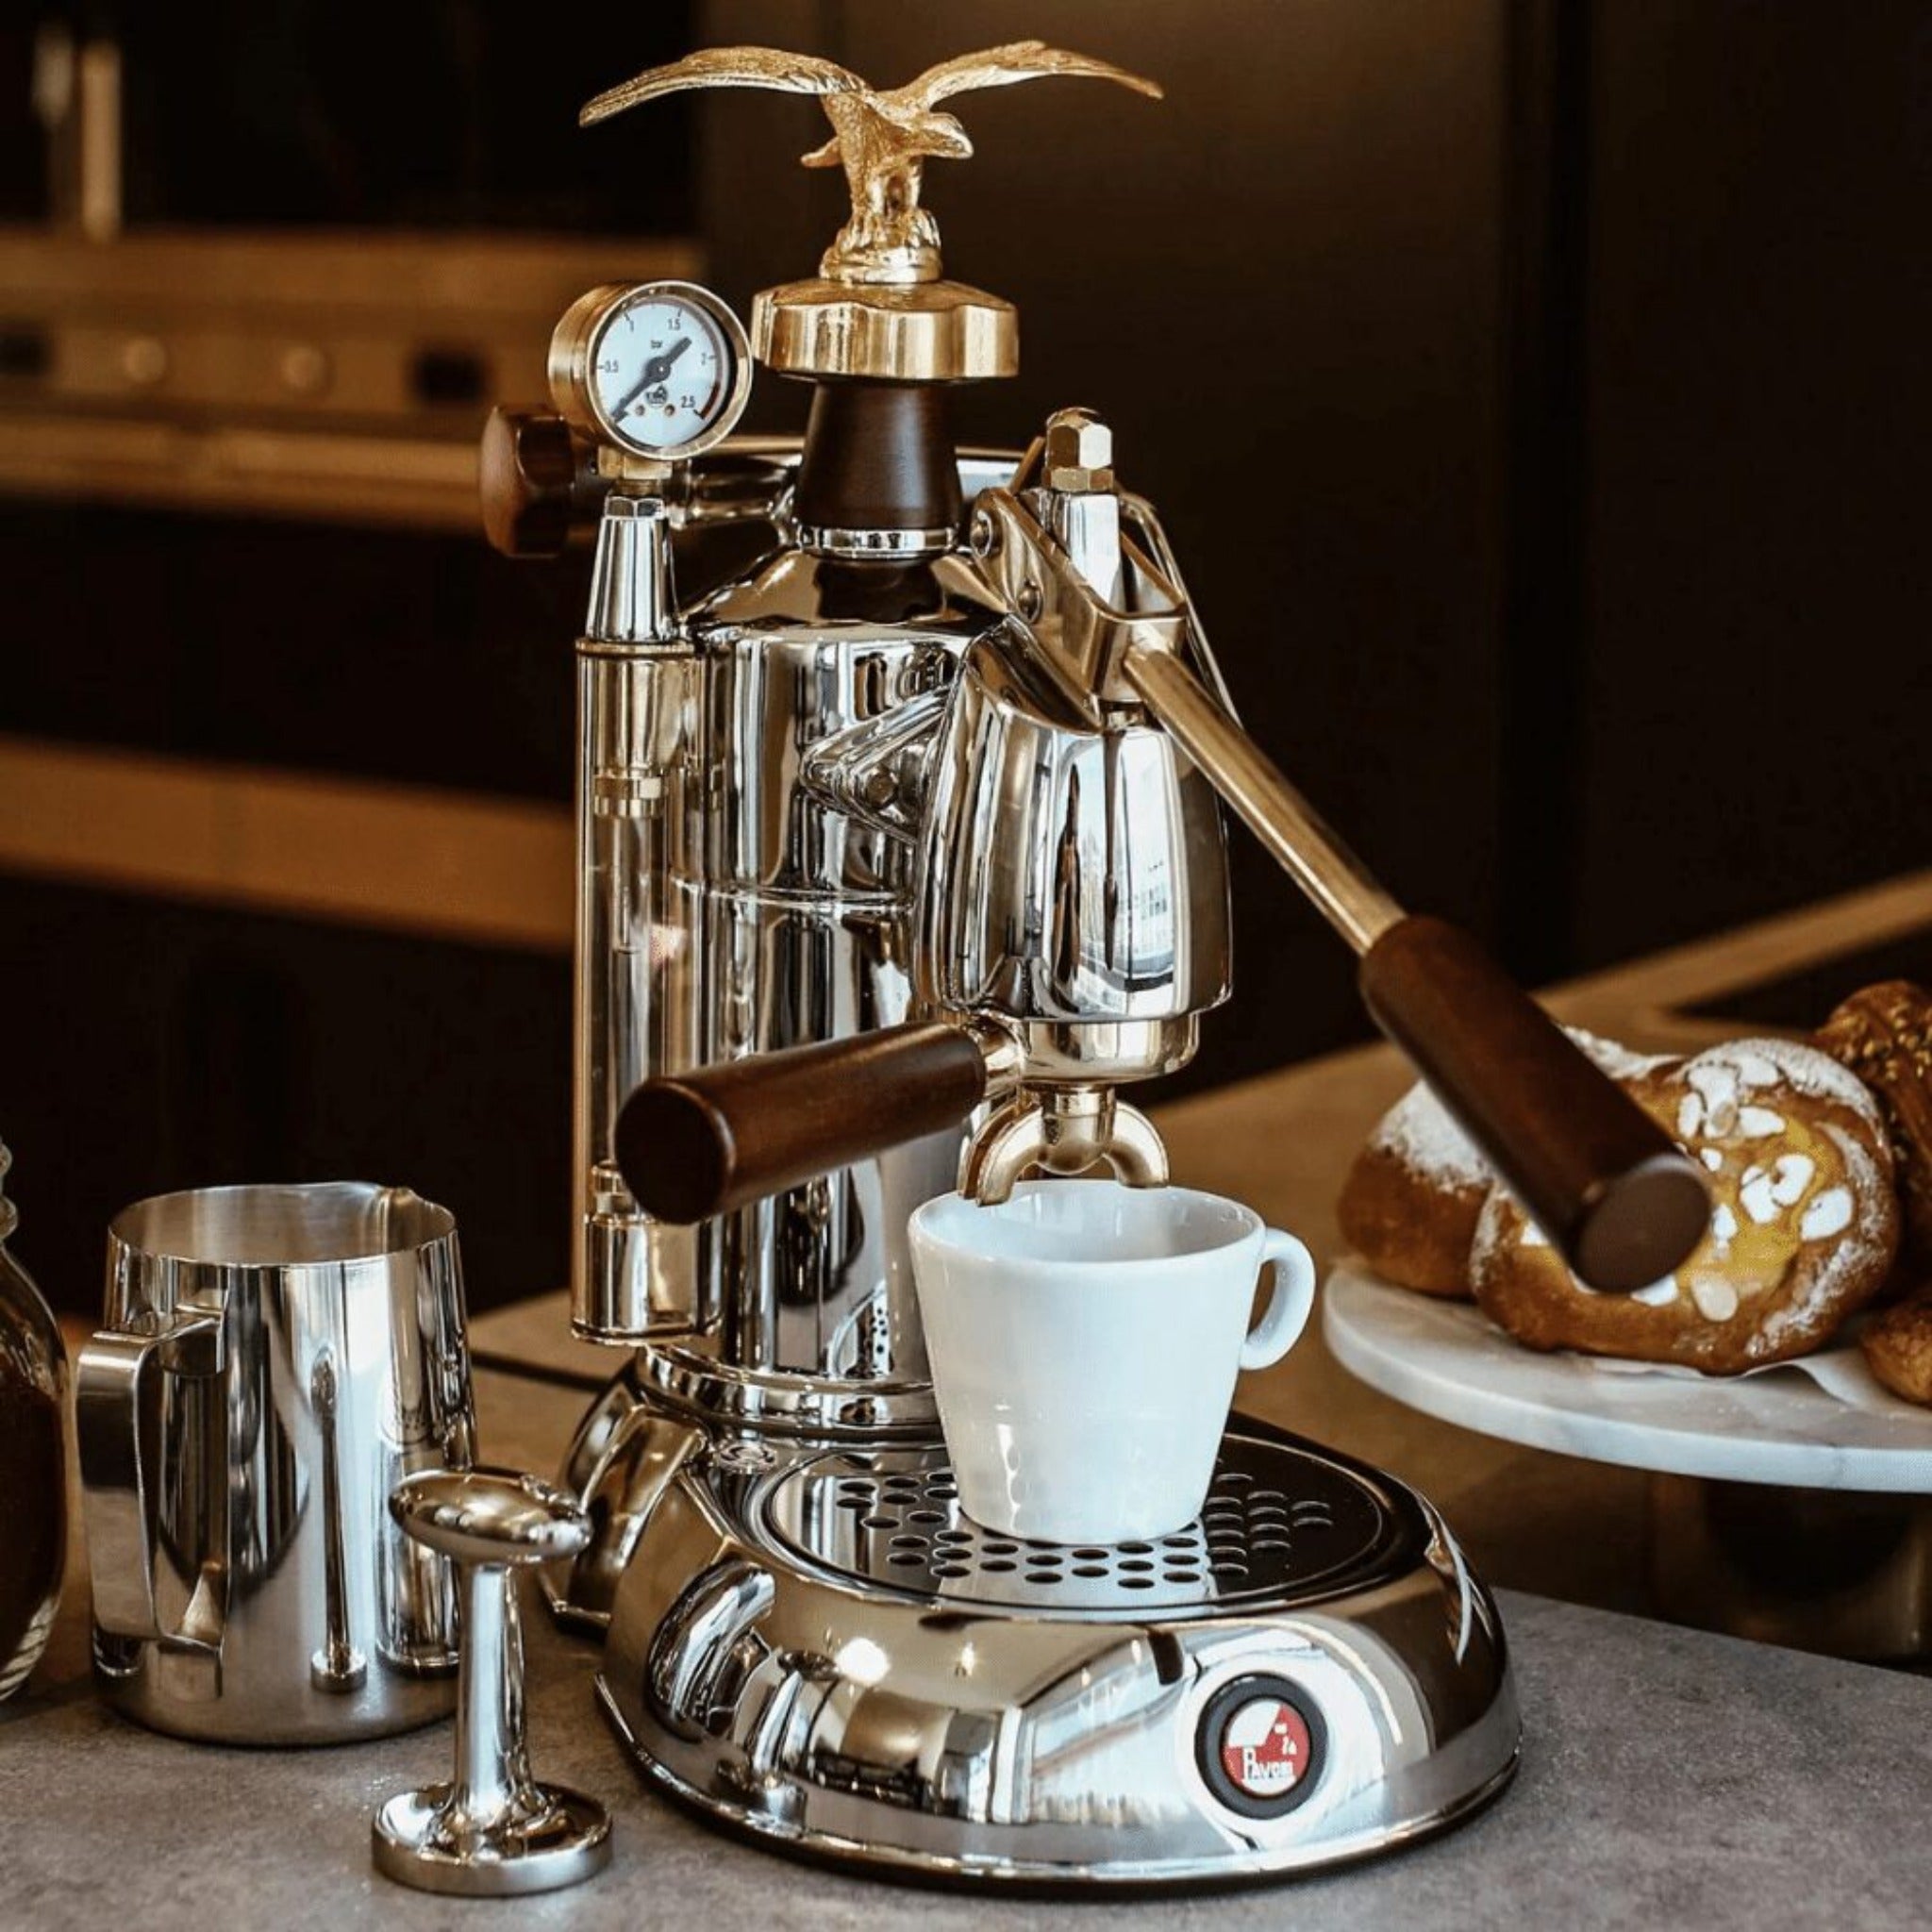 La Pavoni Professional Expo Lever Home Espresso Machine